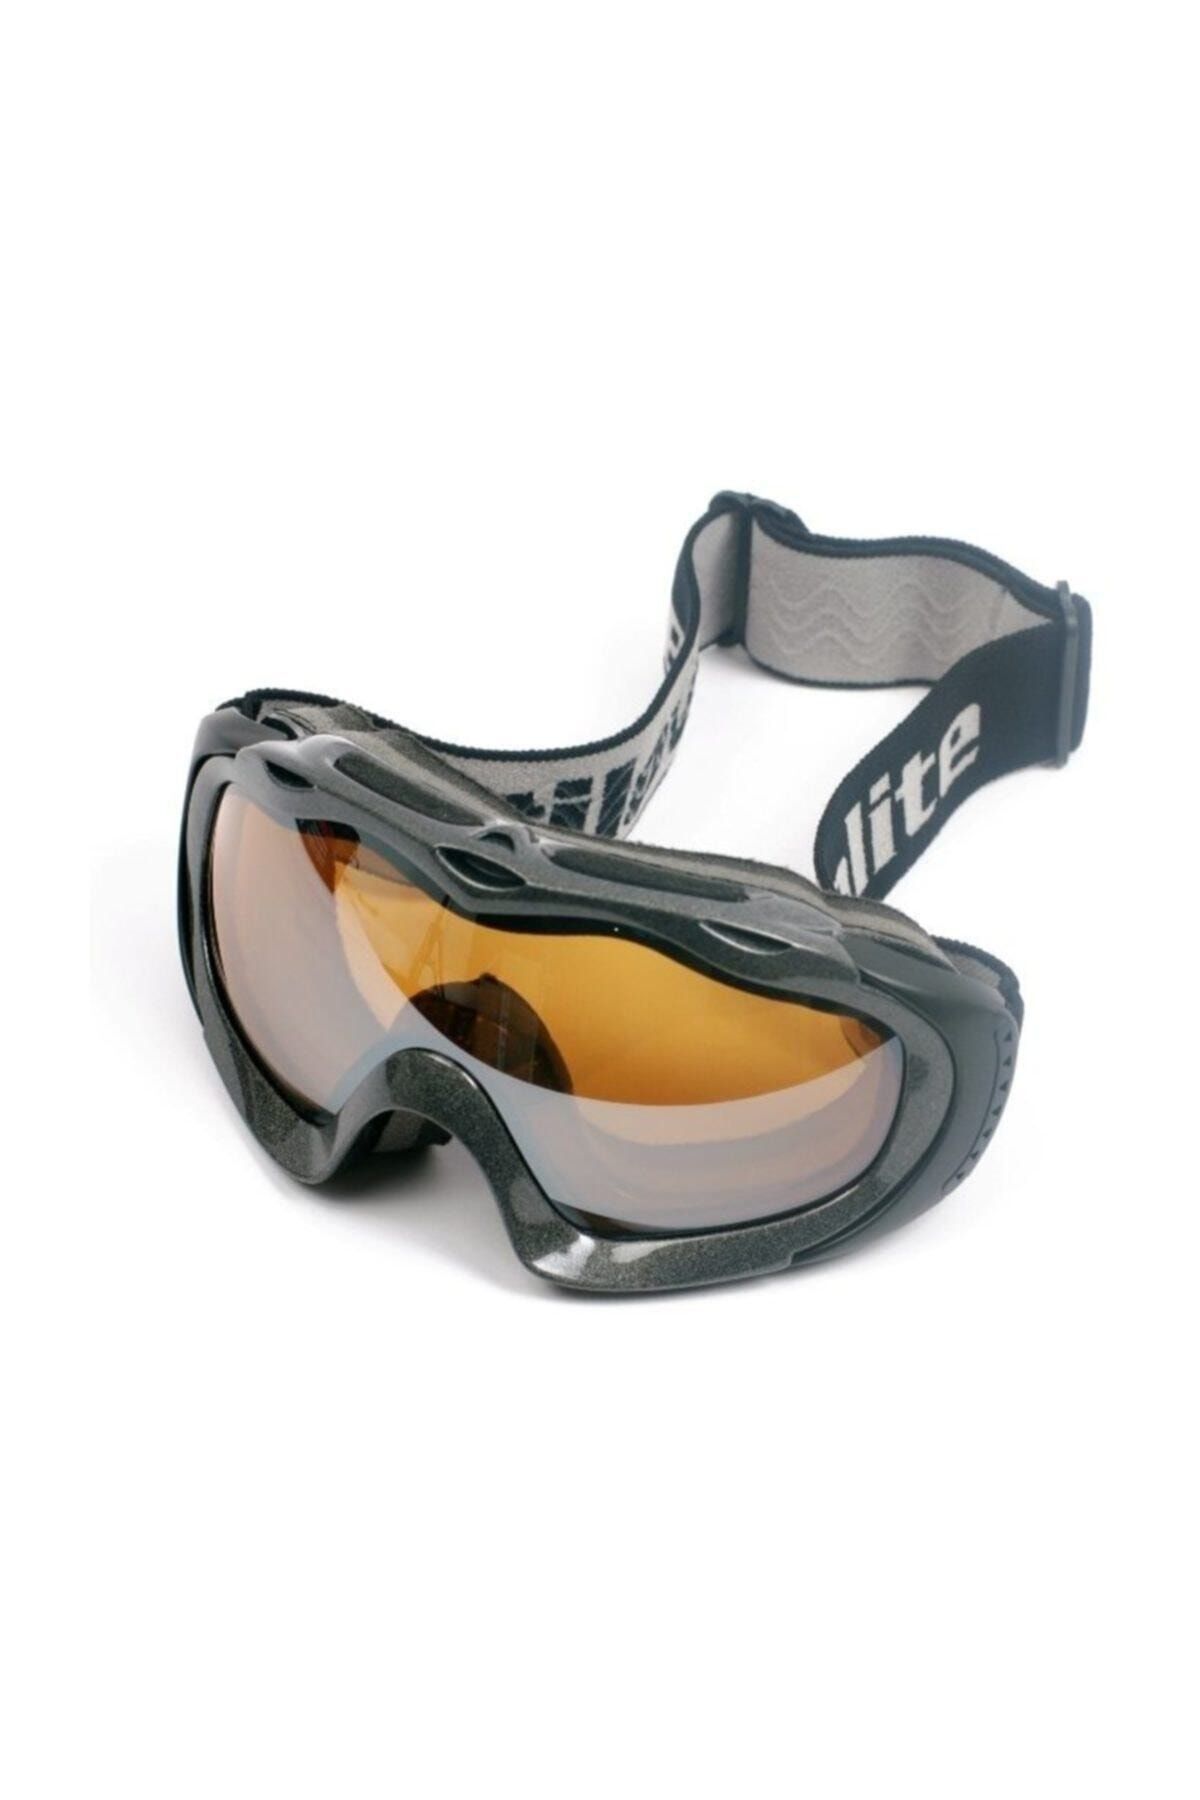 Kayak Gözlüğü Gtx - Sp210-g